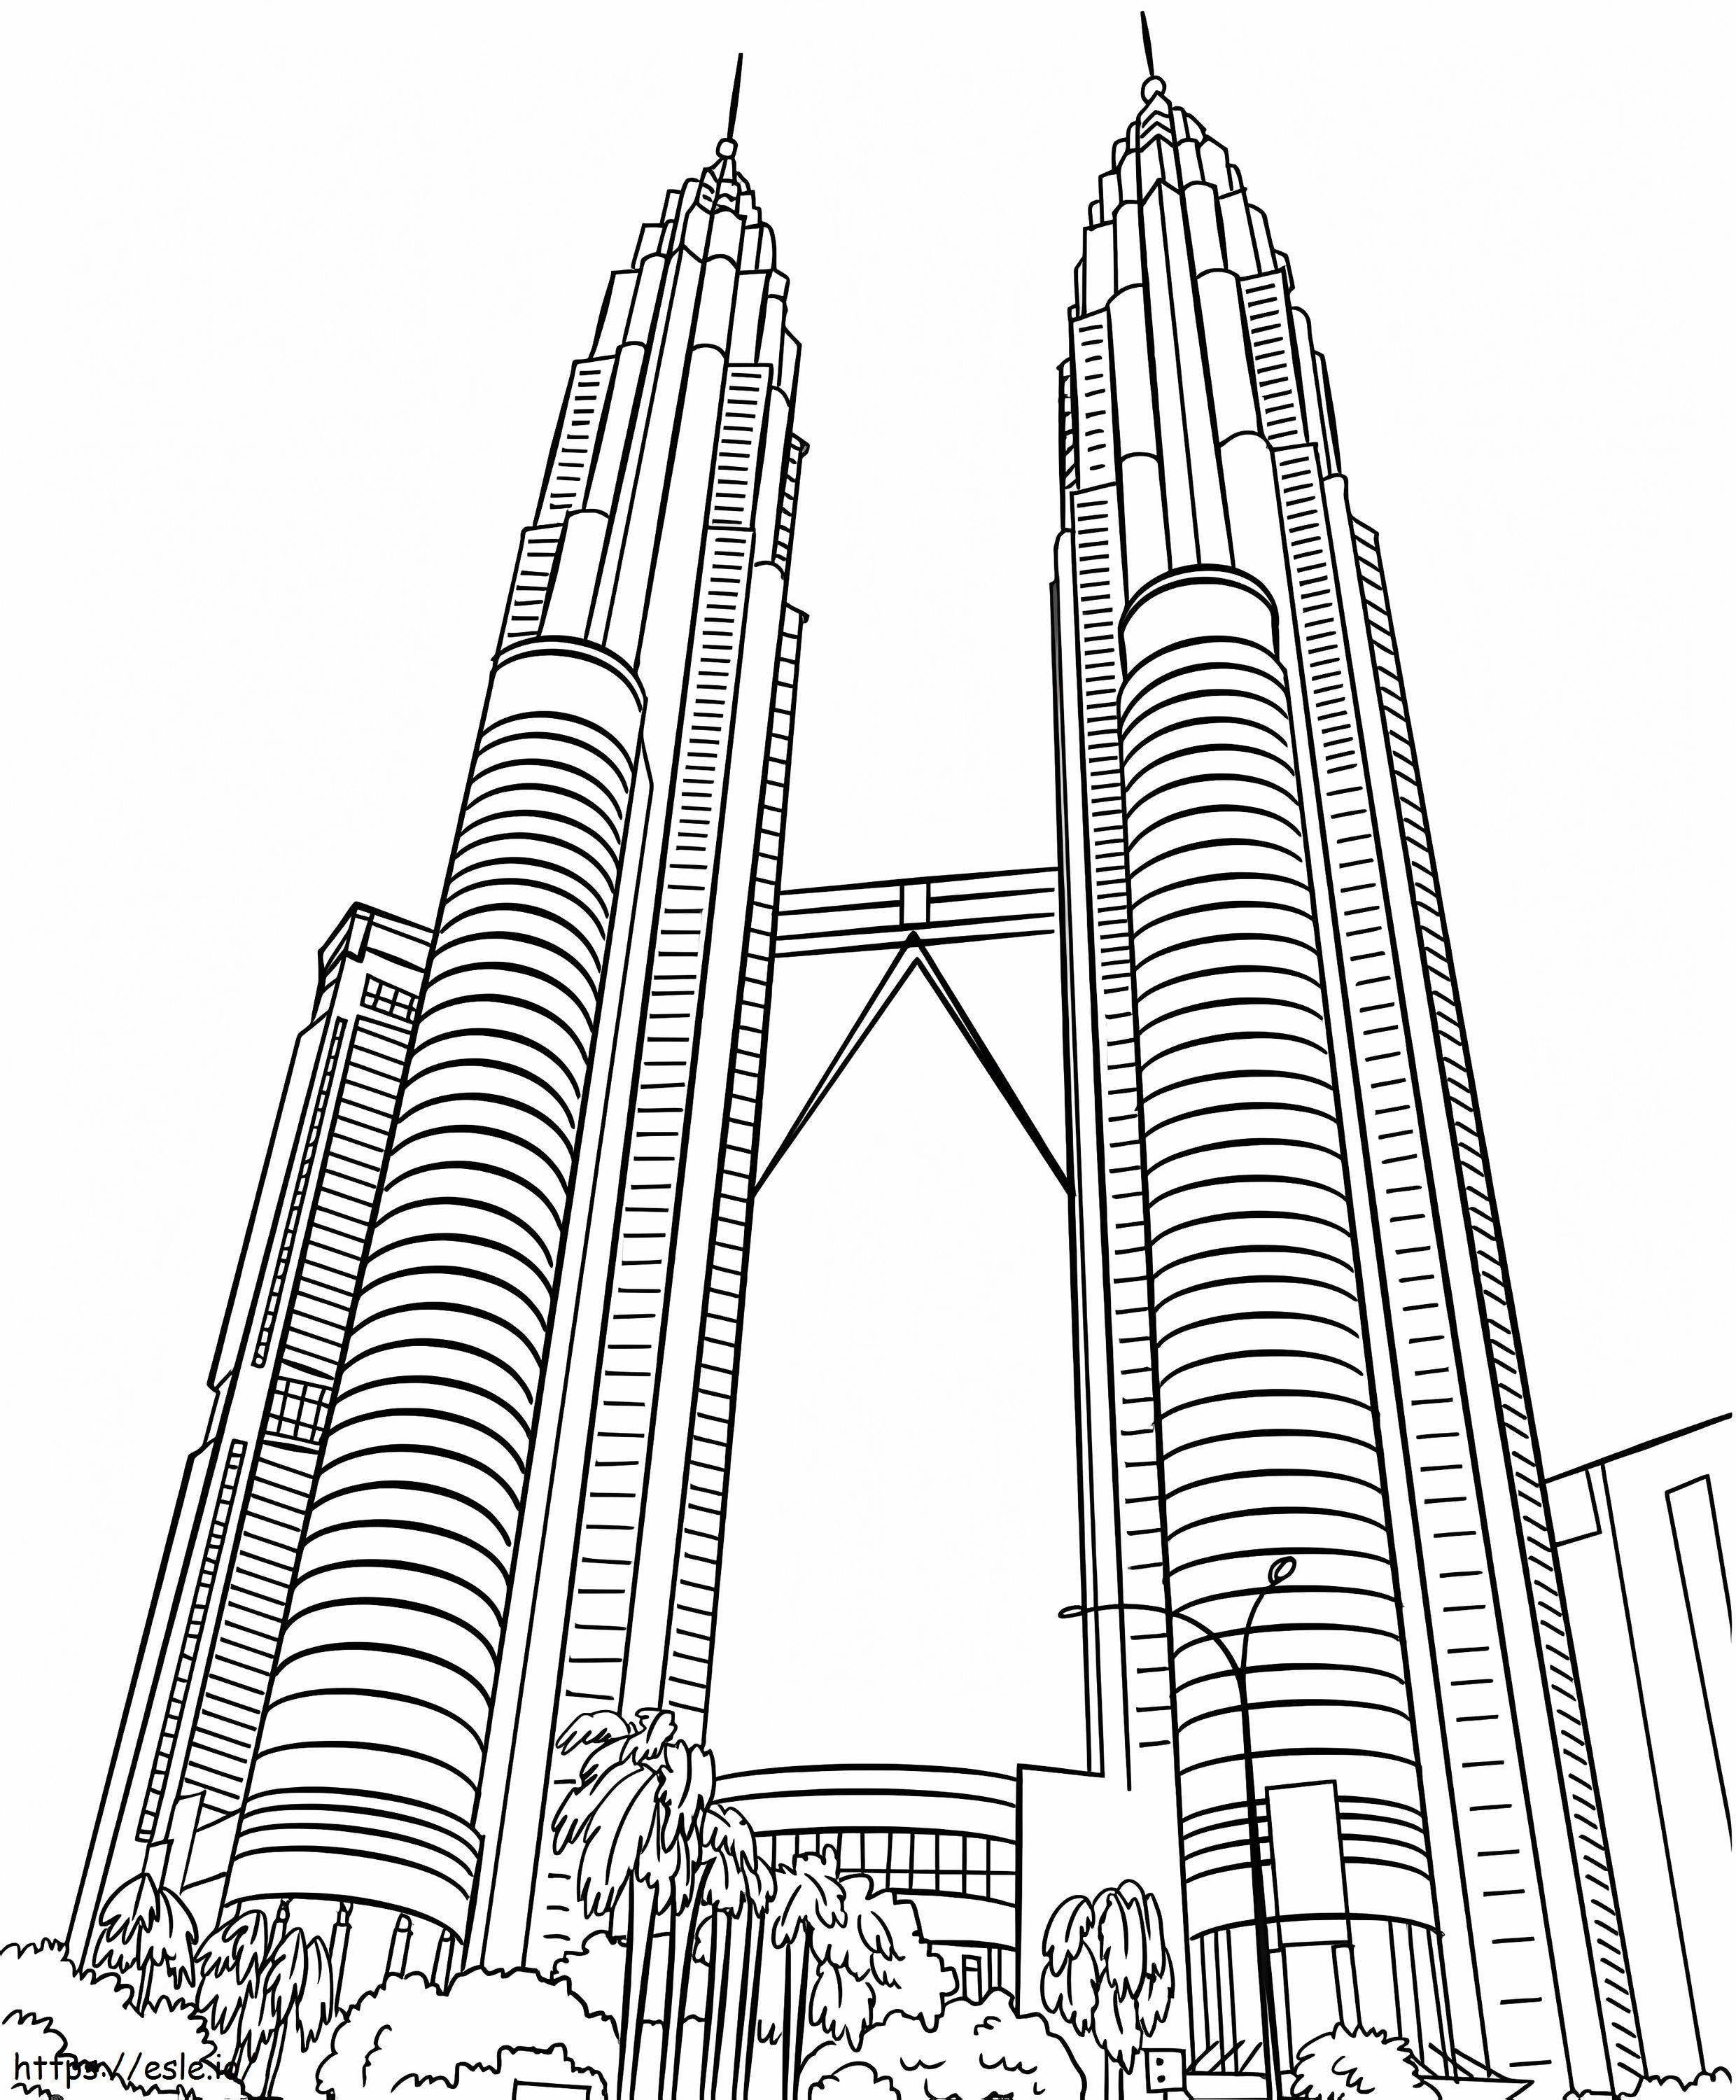 Petronas İkiz Kuleleri 2 boyama